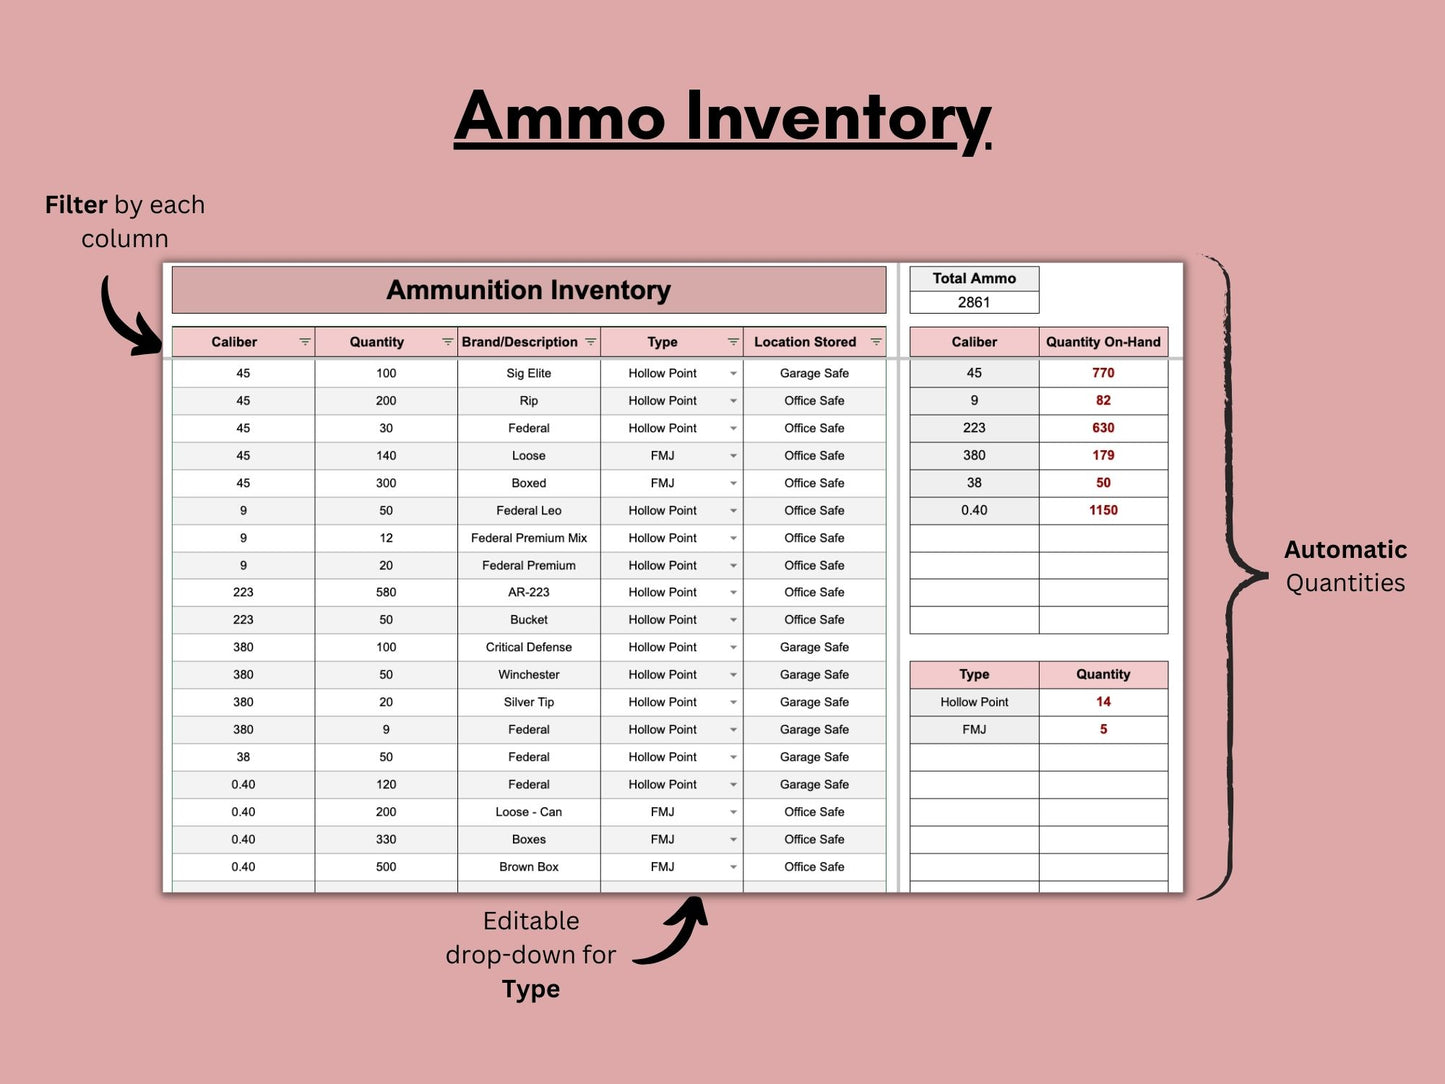 Firearm & Ammunition Tracker | Google Sheets Template